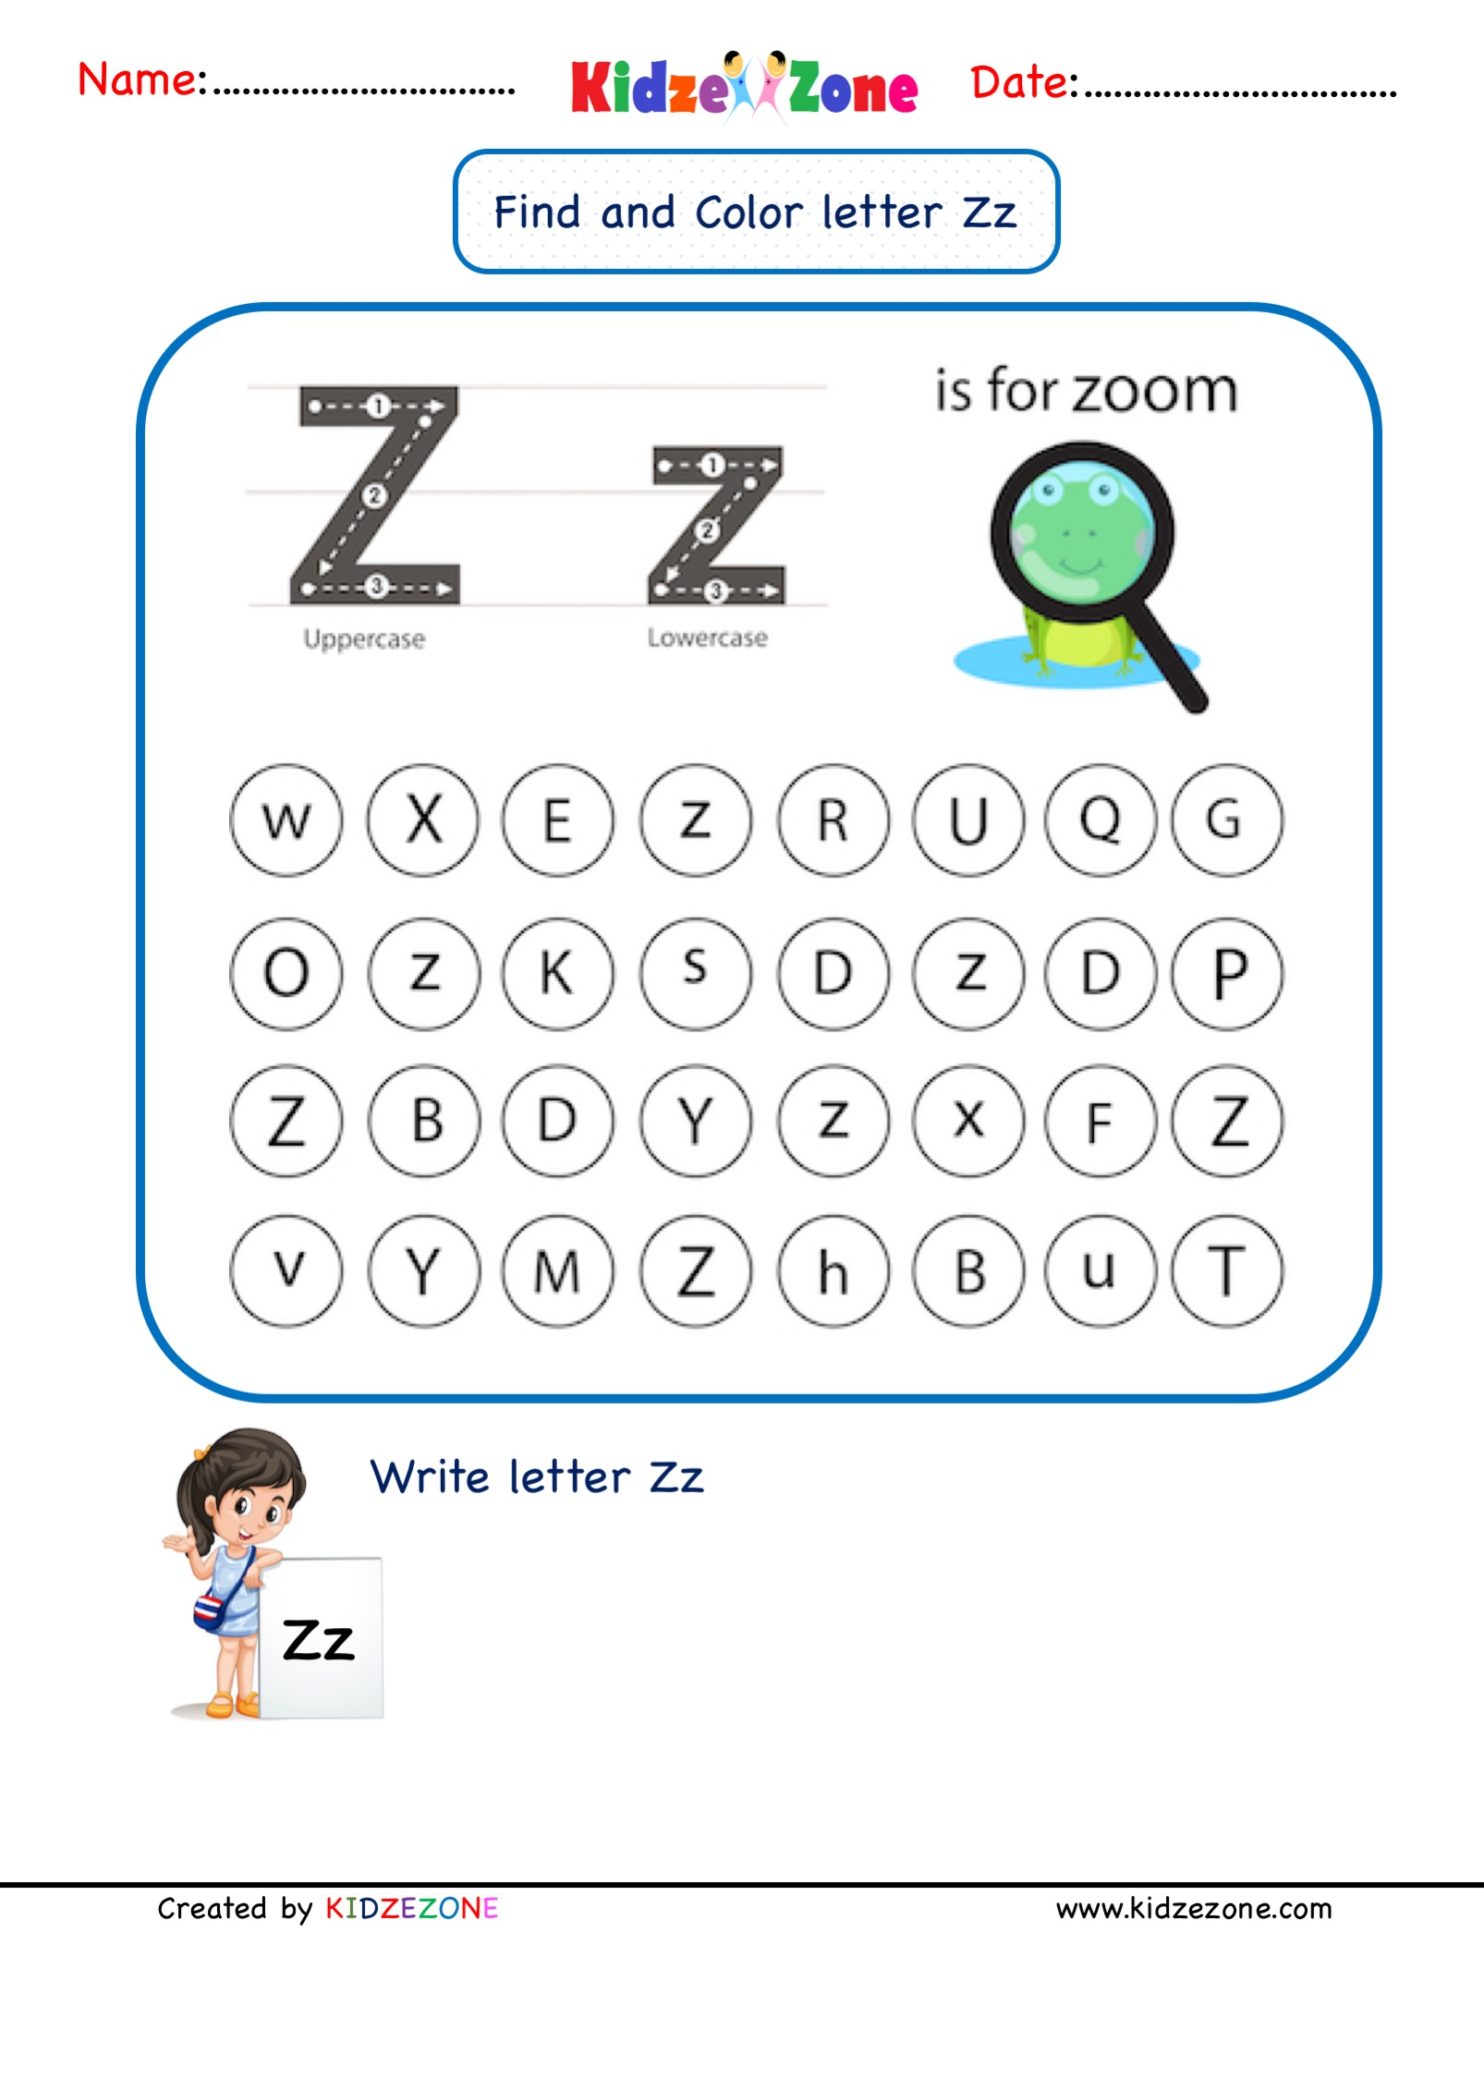 kindergarten-letter-z-worksheets-find-and-color-kidzezone